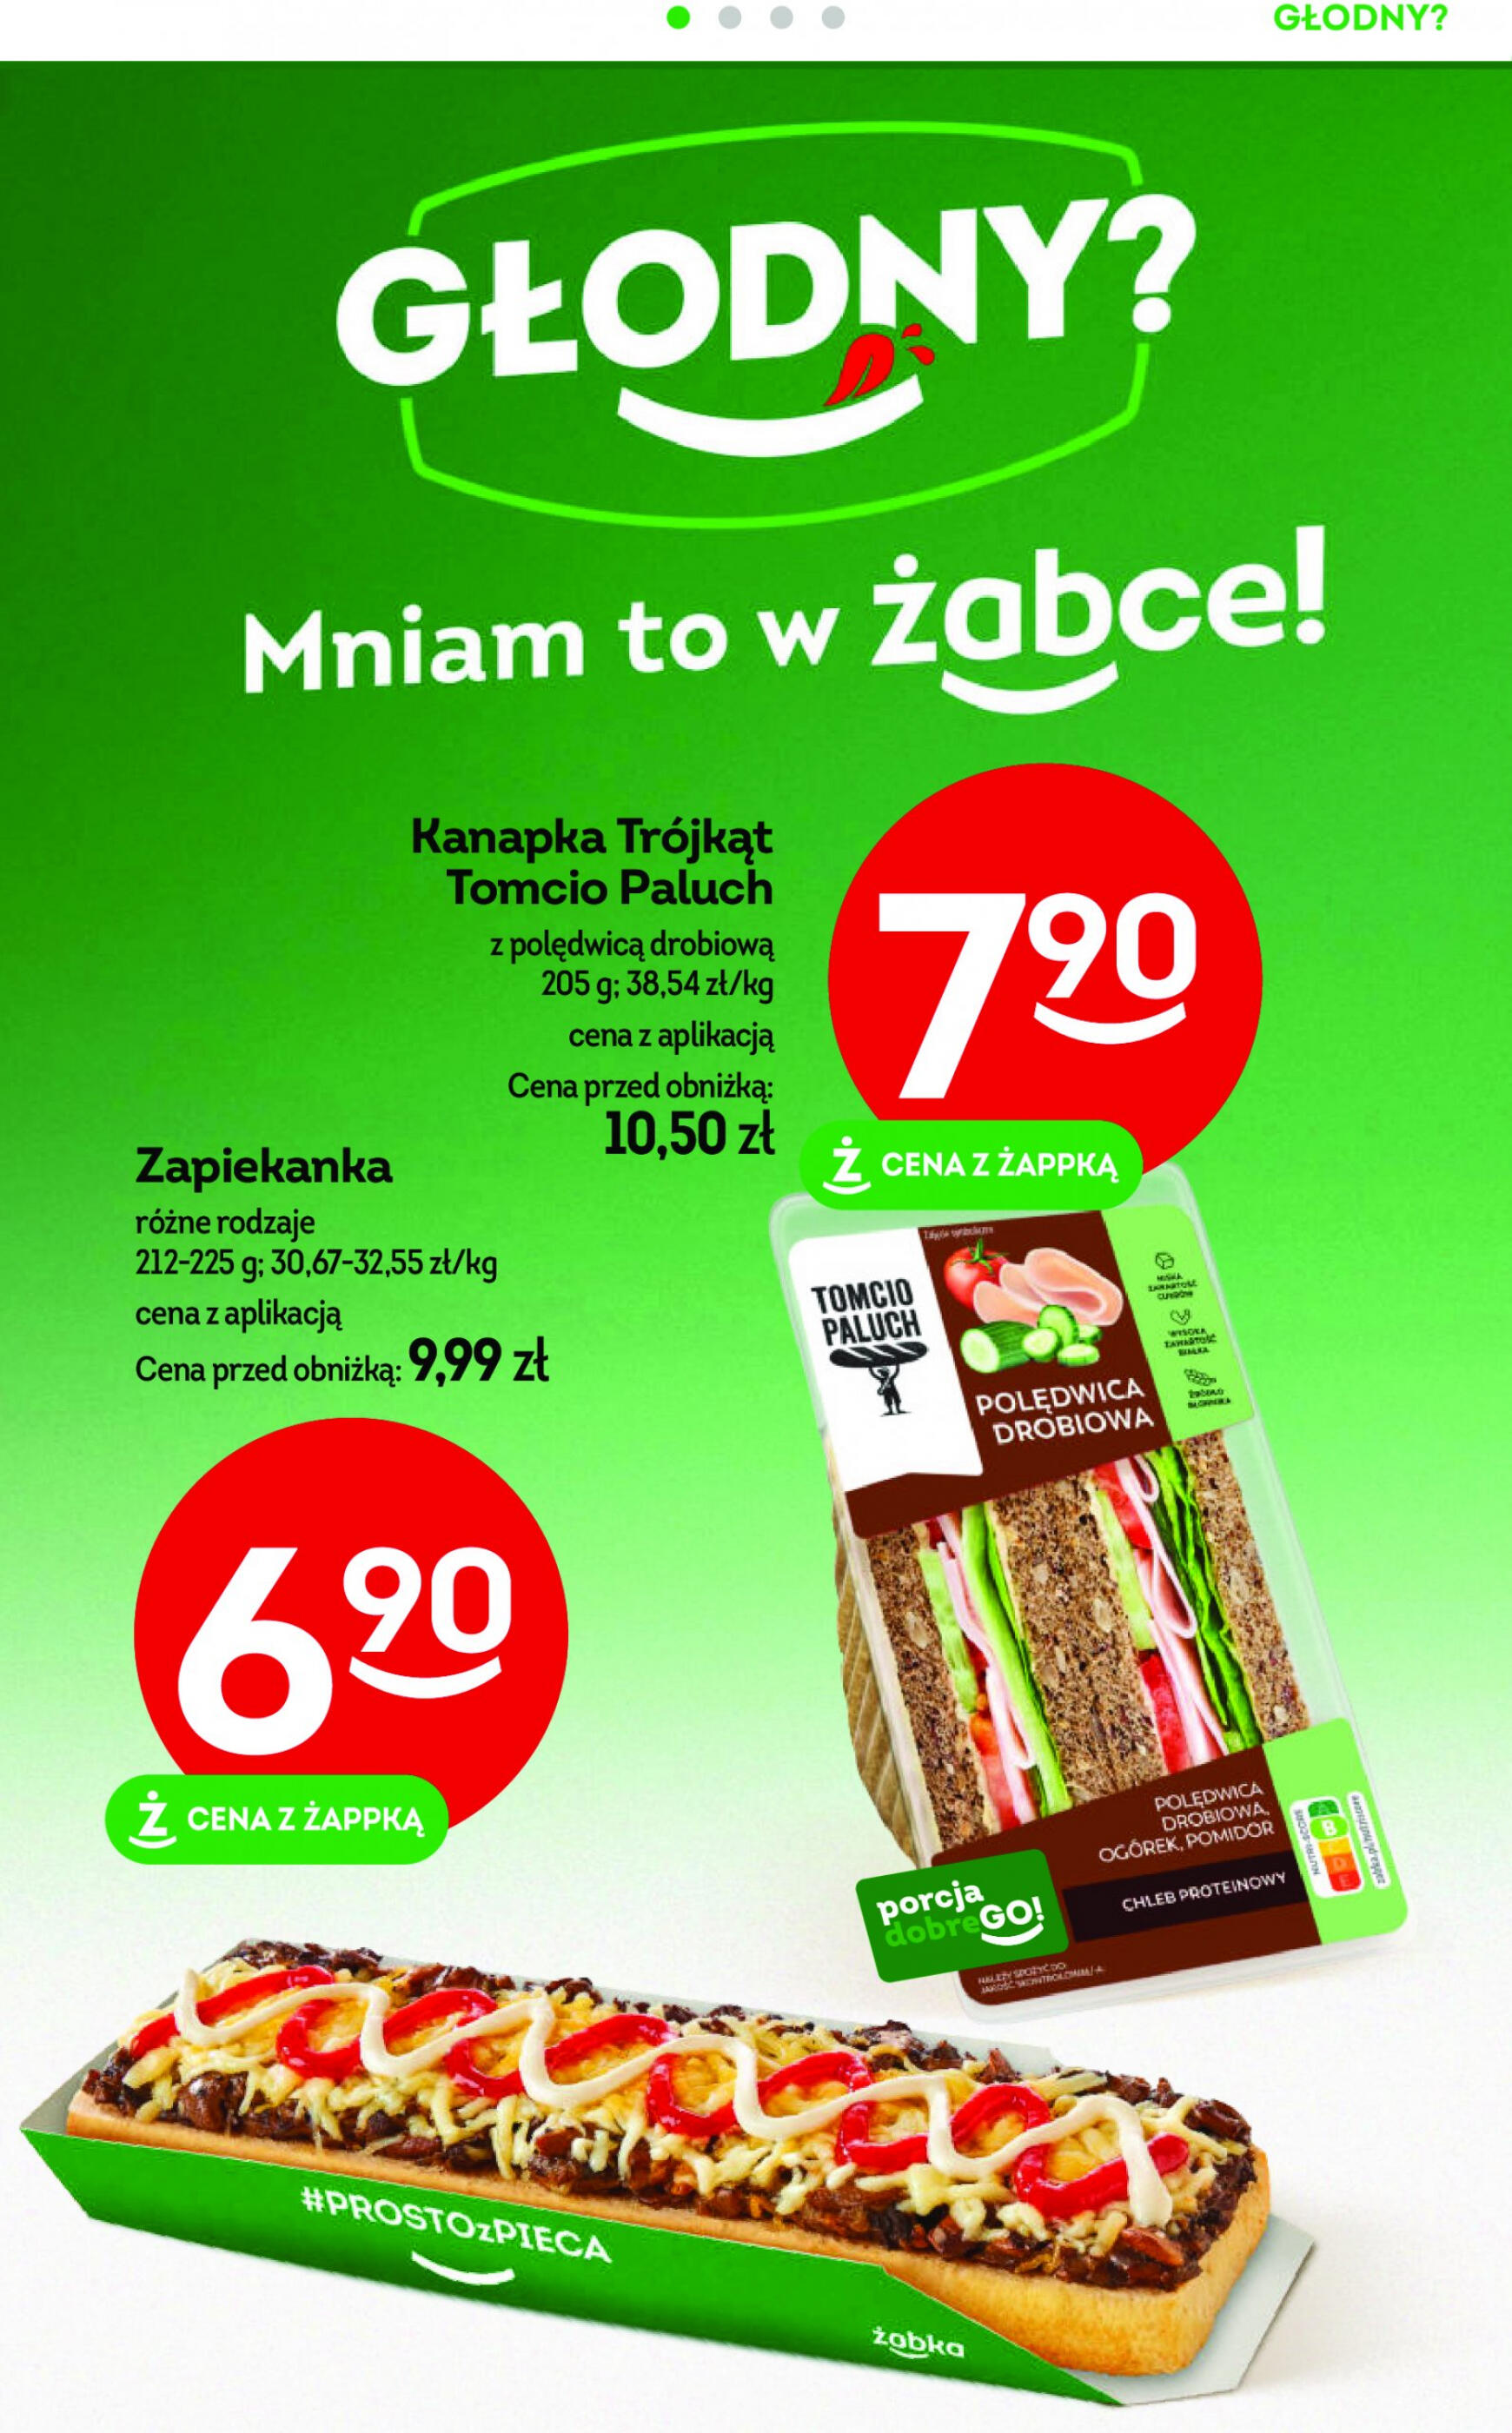 zabka - Żabka gazetka aktualna ważna od 10.04. - 23.04. - page: 2